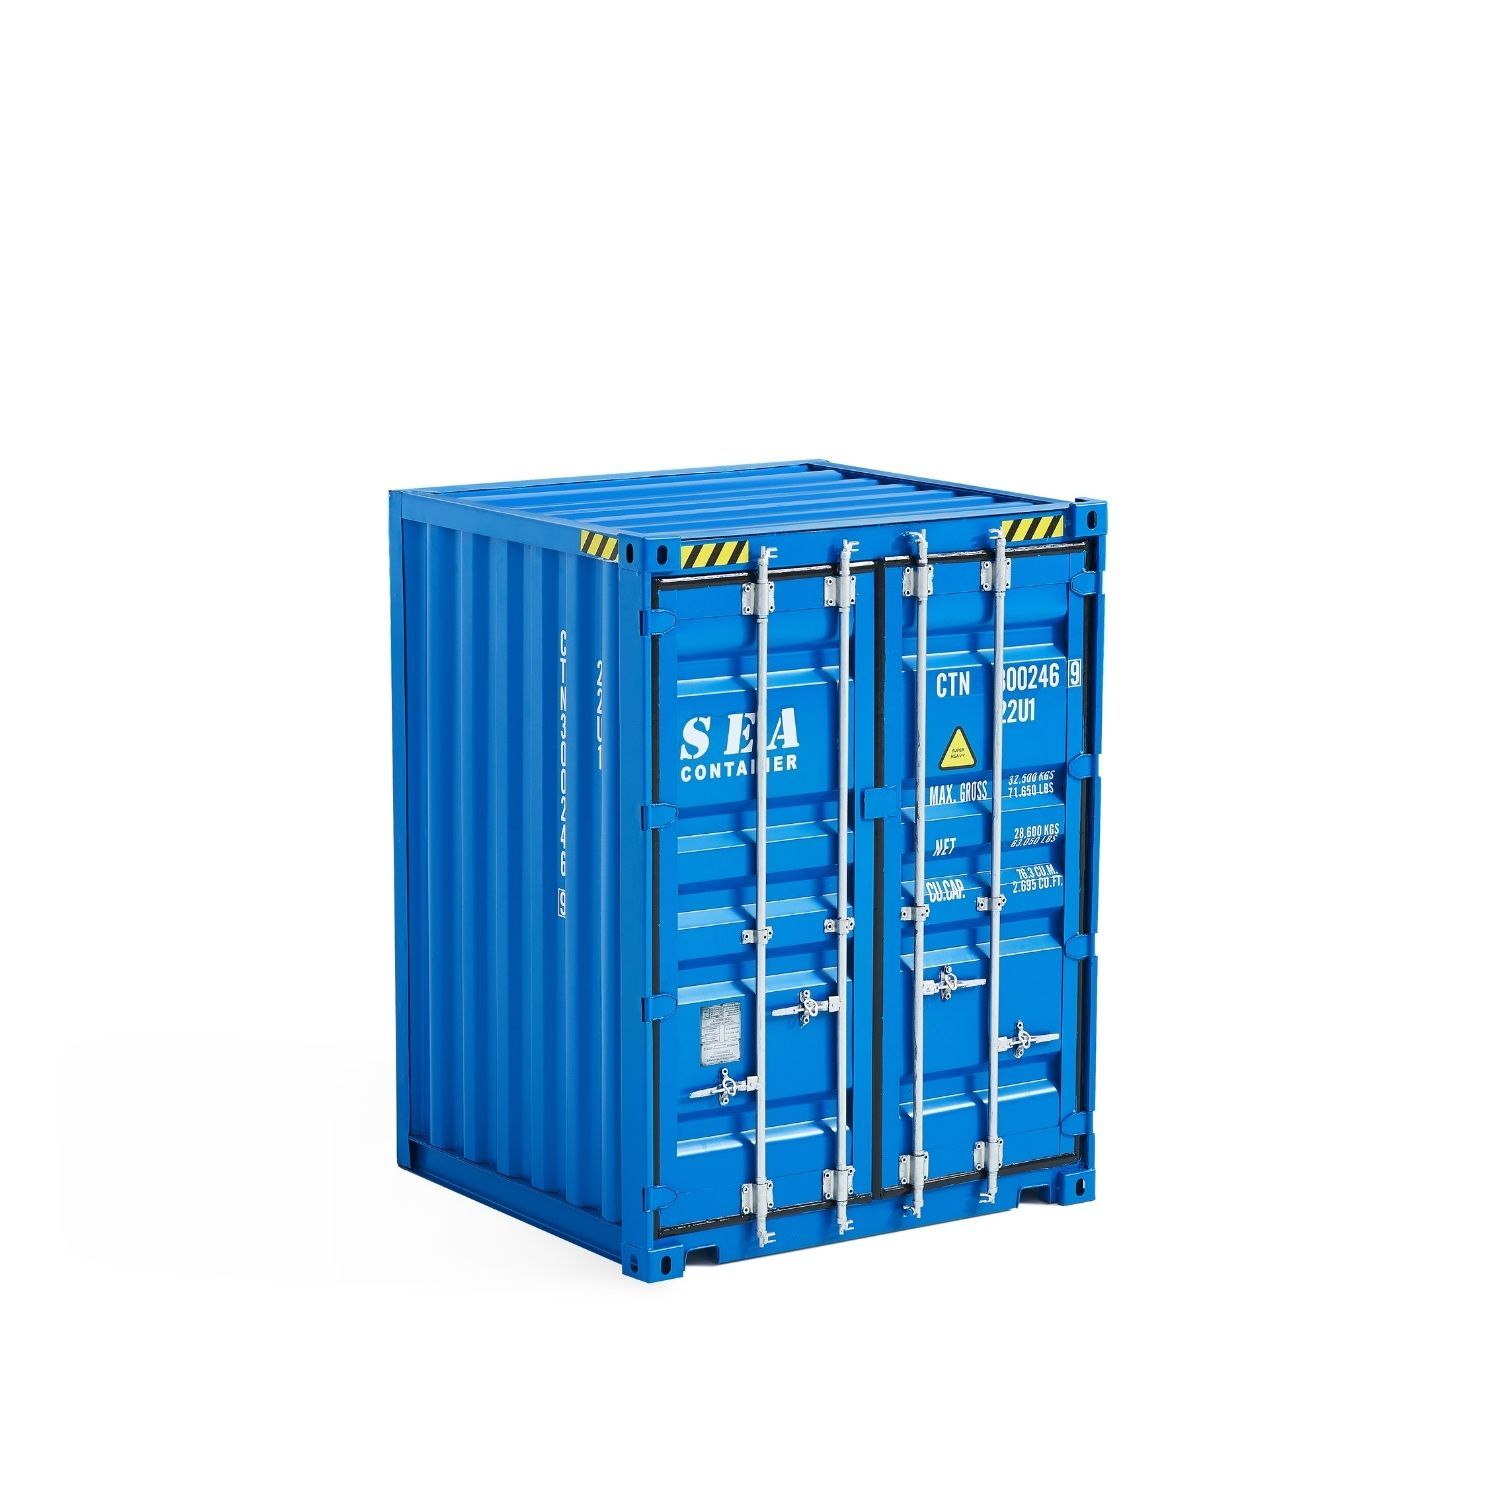 Cargo Cabinet Storage Foundry 